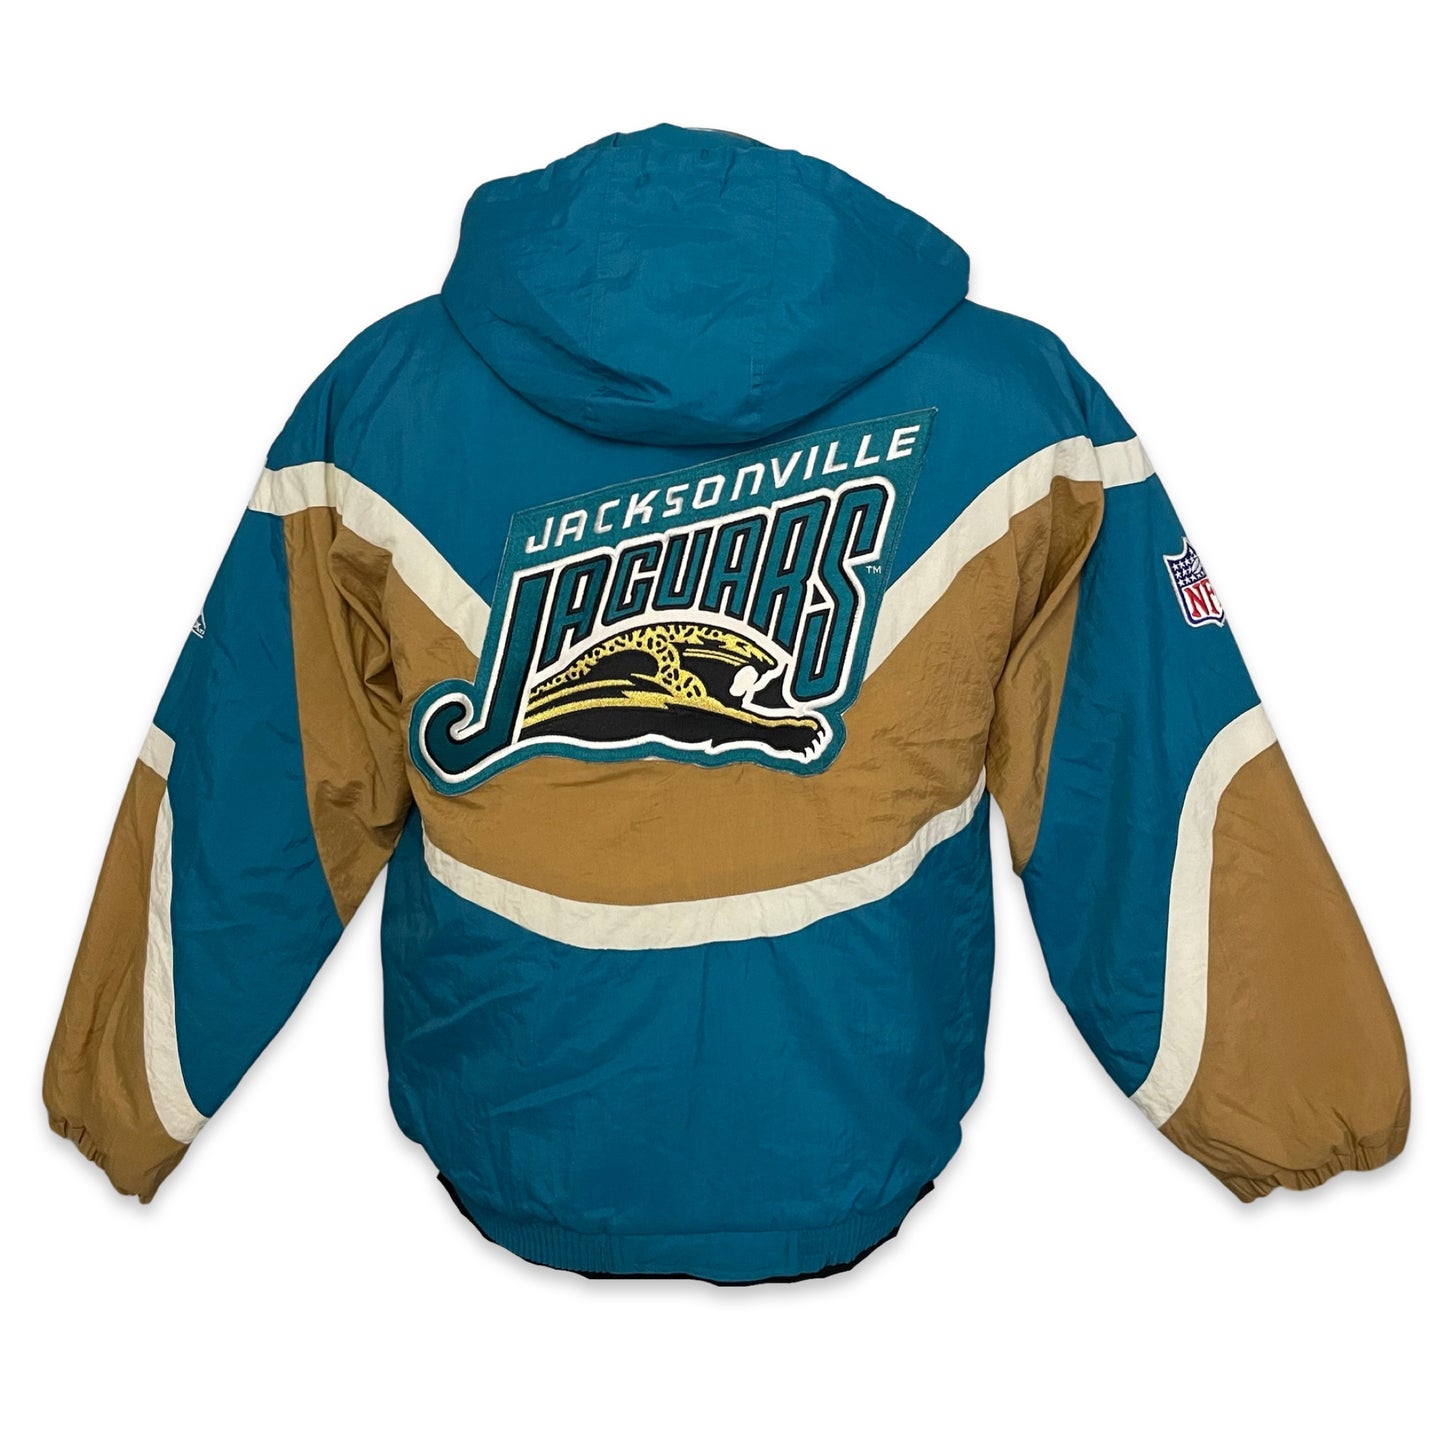 Vintage Jacksonville Jaguars APEX banned logo jacket size SMALL